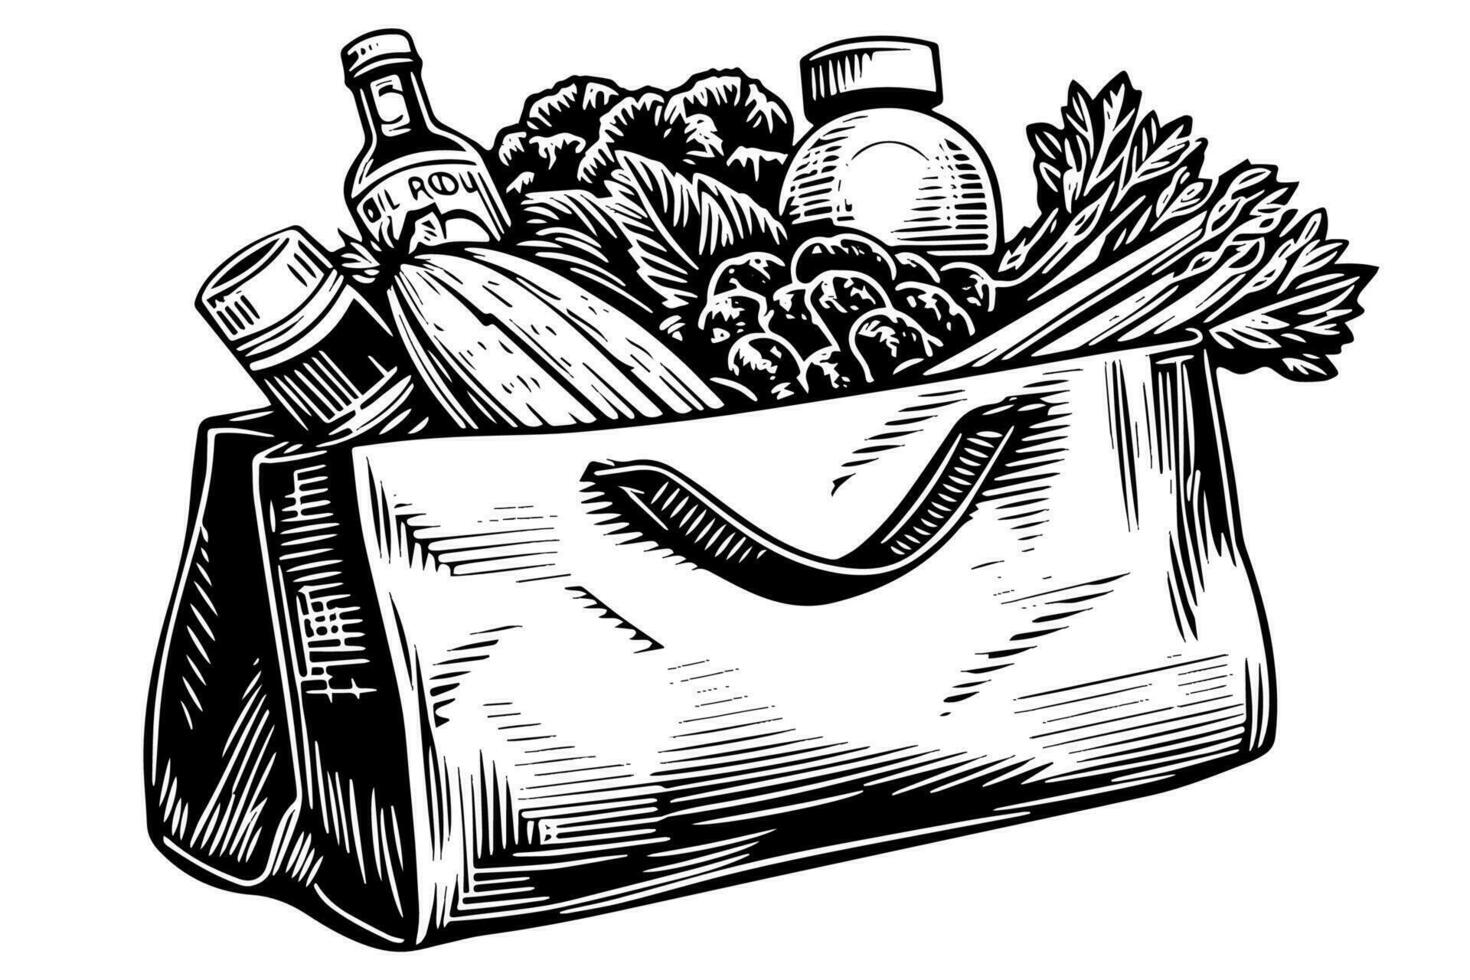 kruidenier zak vol van voedsel gravure schetsen vector hand getekend illustratie.